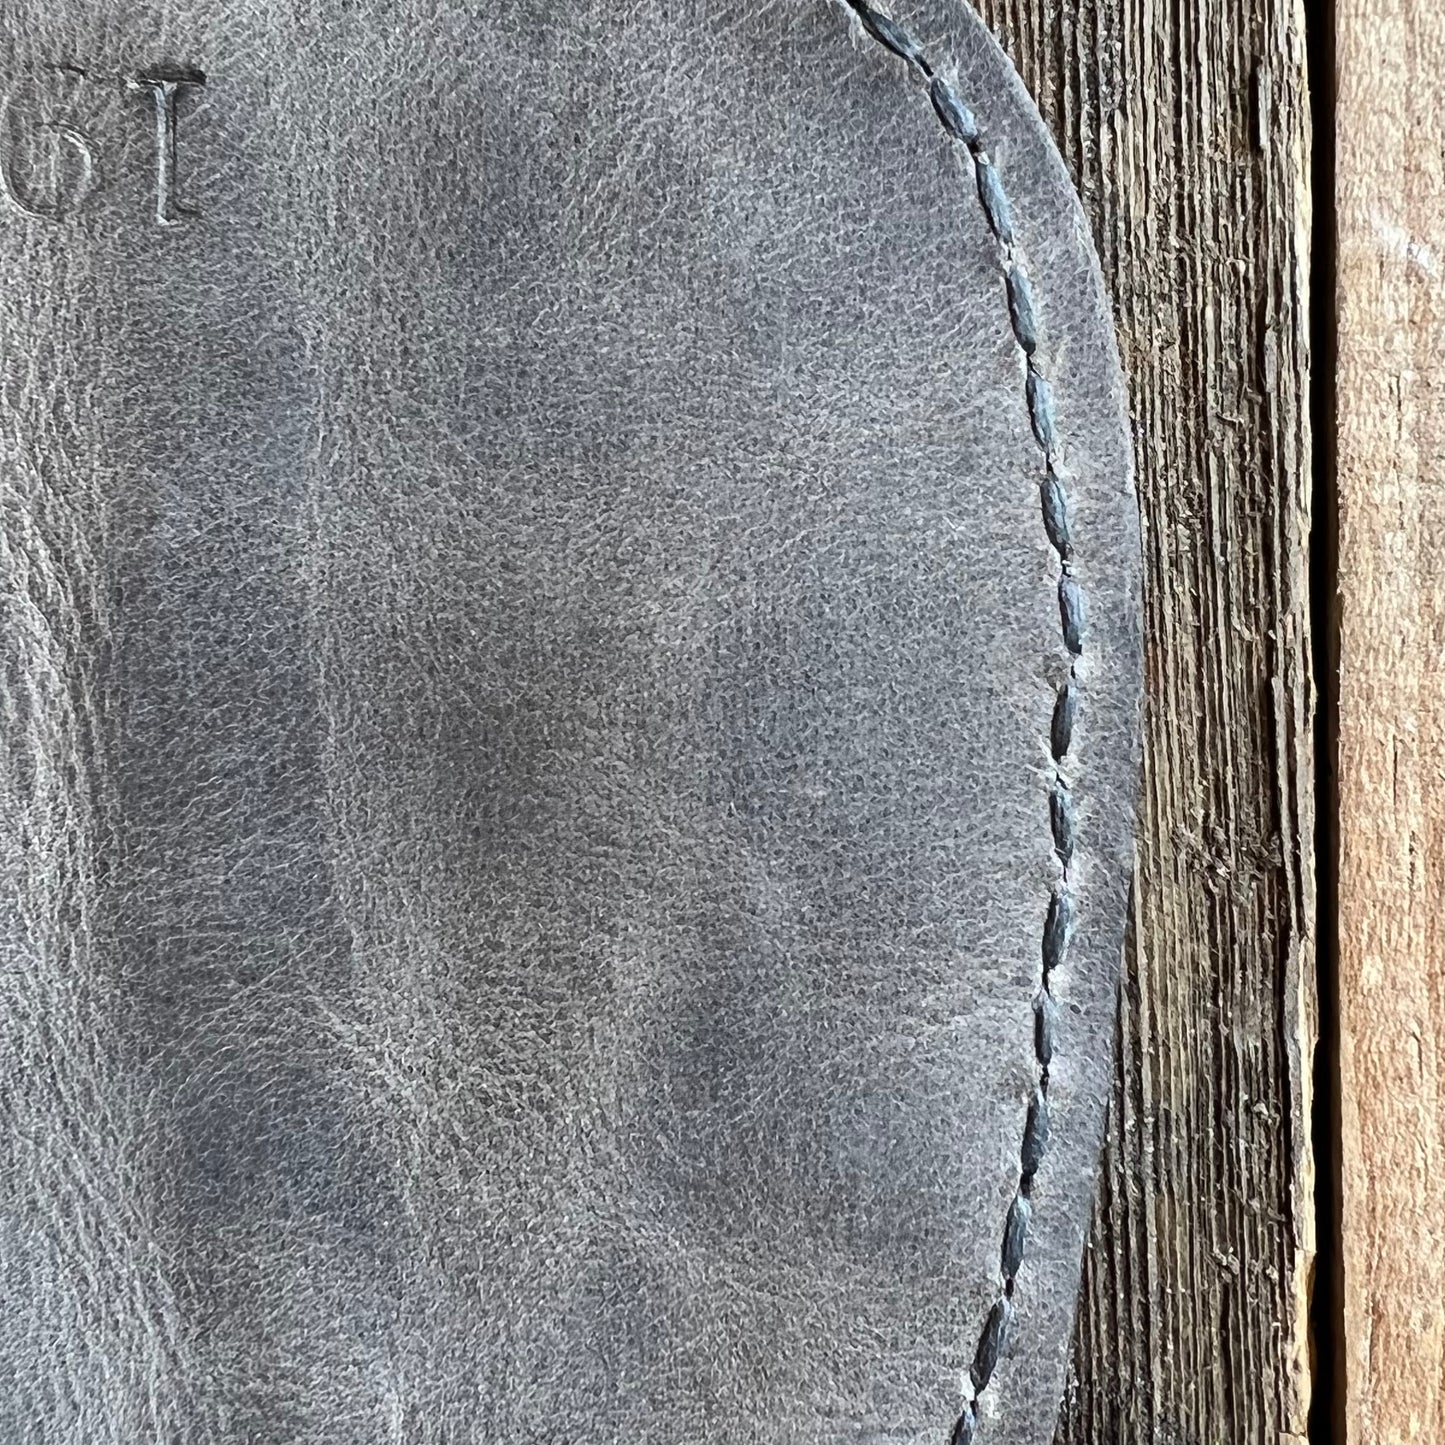 Charcoal stitching on smoke leather